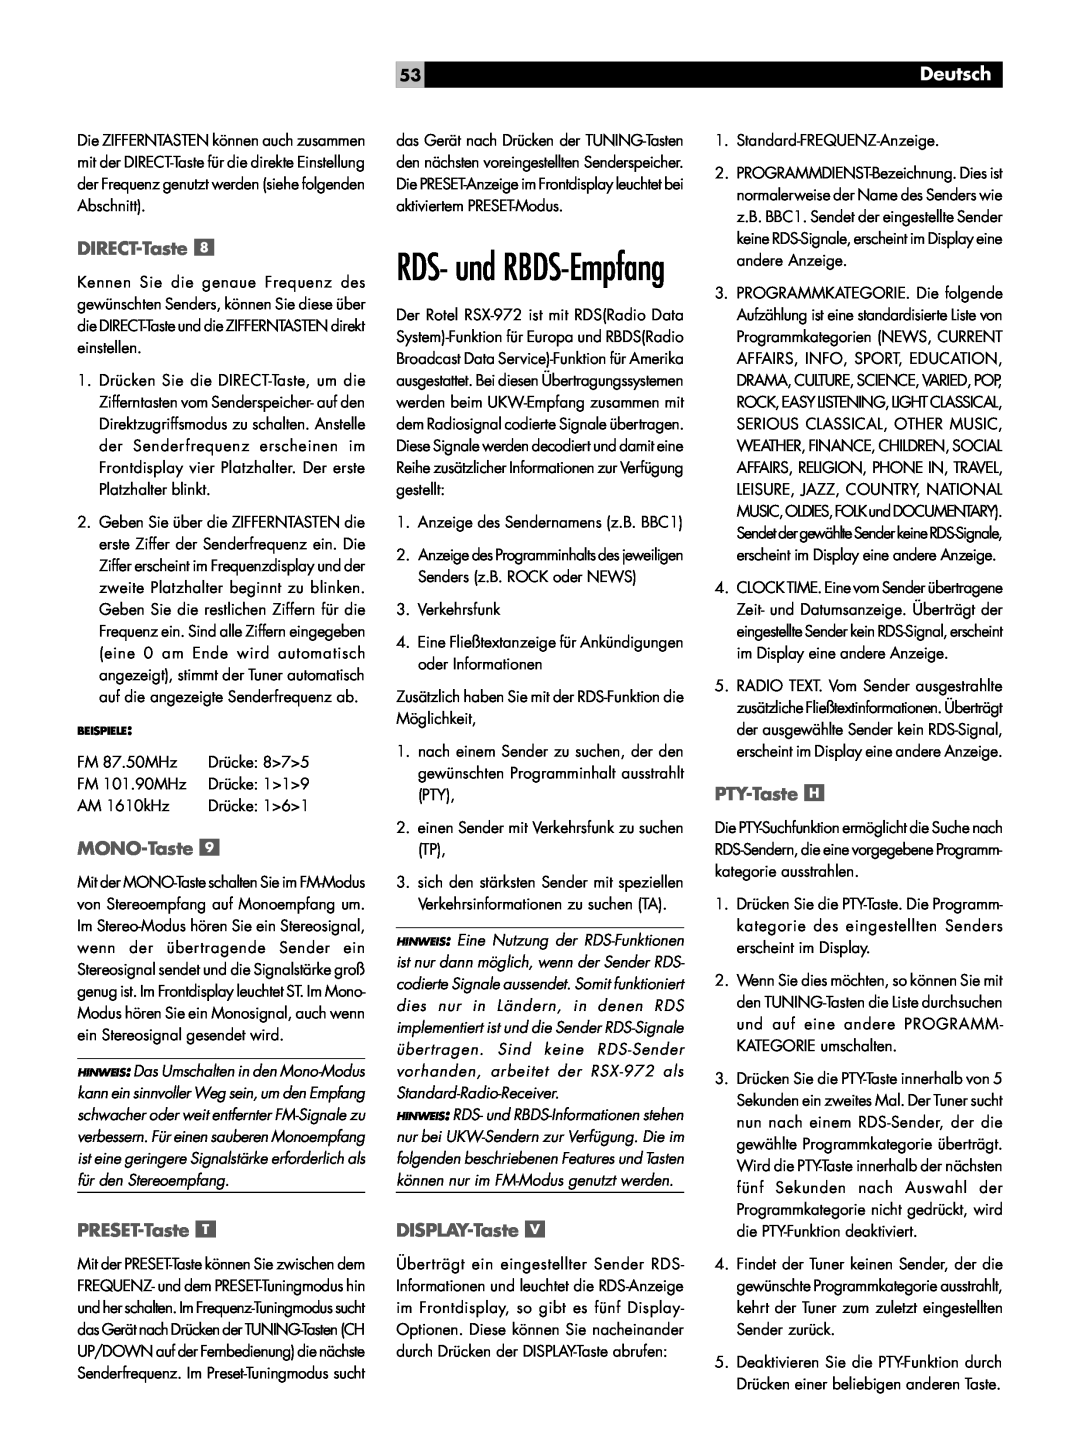 Rotel RSX-972 owner manual RDS- und RBDS-Empfang, DIRECT-Taste, MONO-Taste, PTY-Taste, PRESET-Taste, DISPLAY-Taste, Deutsch 